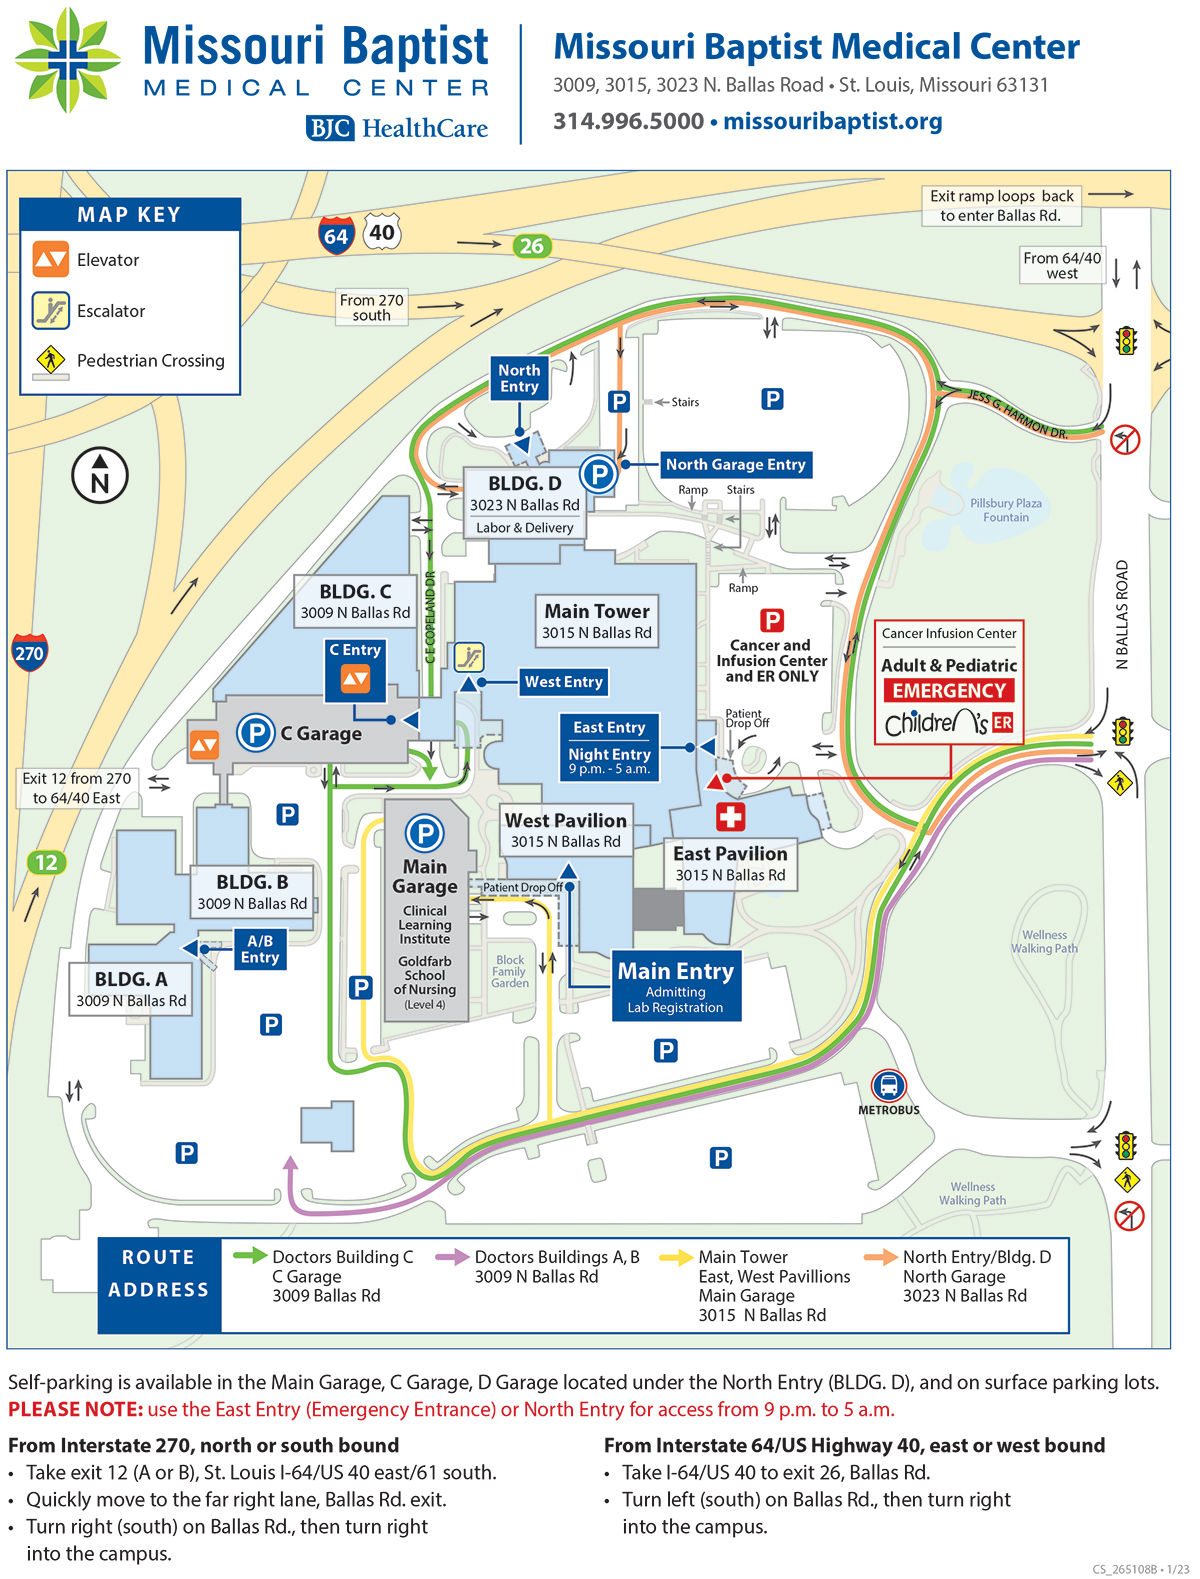 Barnes Hospital Campus Map